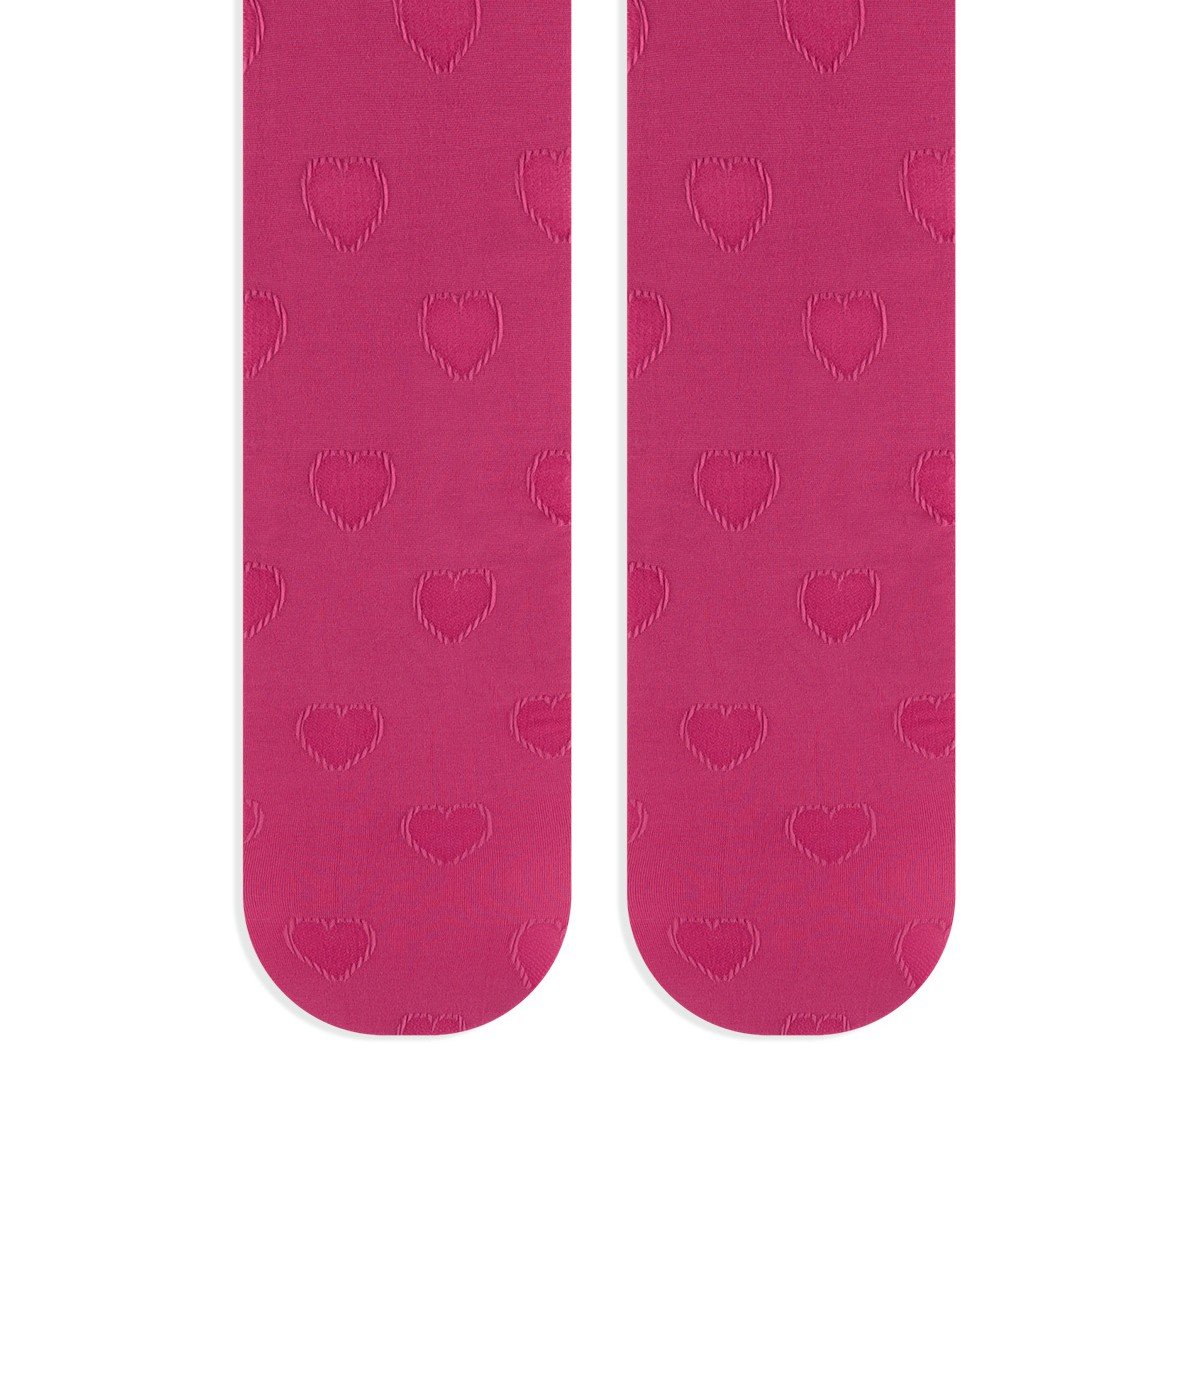 Ciorapi cu chilot pentru fete Hearty cu desen de inimioare